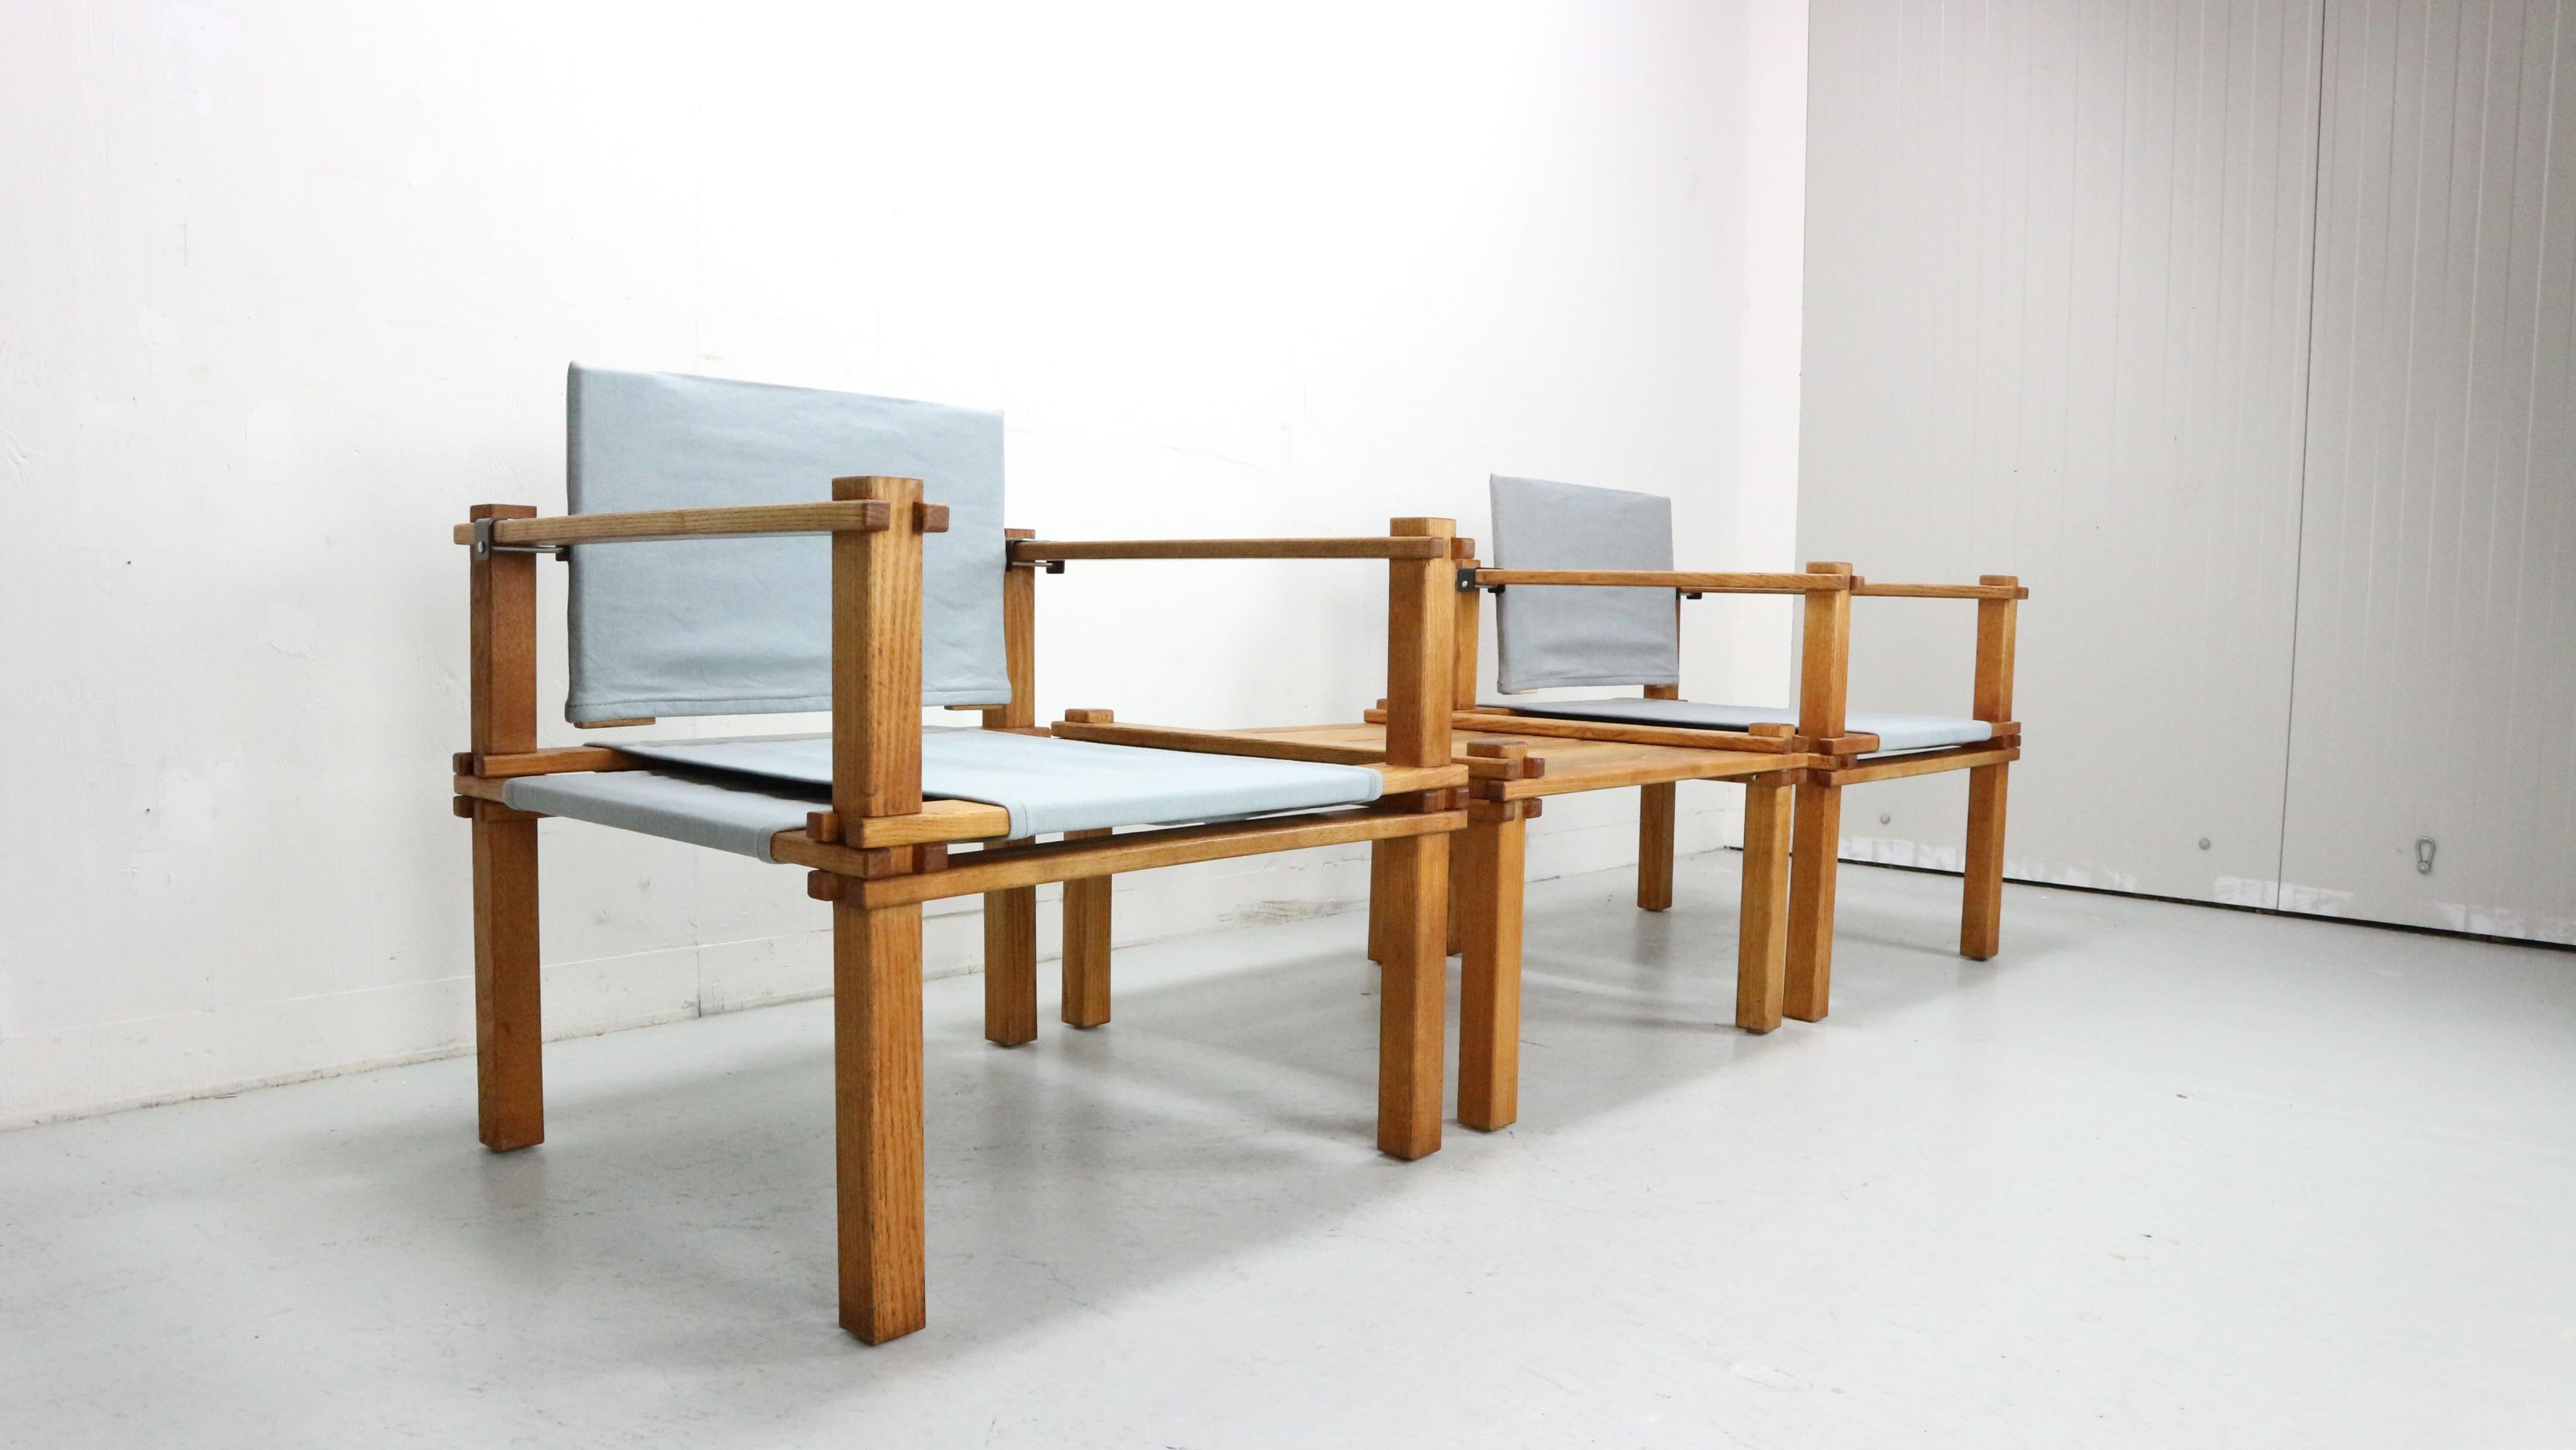 Ensemble de deux chaises Safari avec table faisant partie de la série 'Farmer' conçue par Gerd Lange en 1965 et produite par le fabricant allemand Bofinger. Structure en bois de chêne massif, assise et dossier noués en lin naturel et supports de